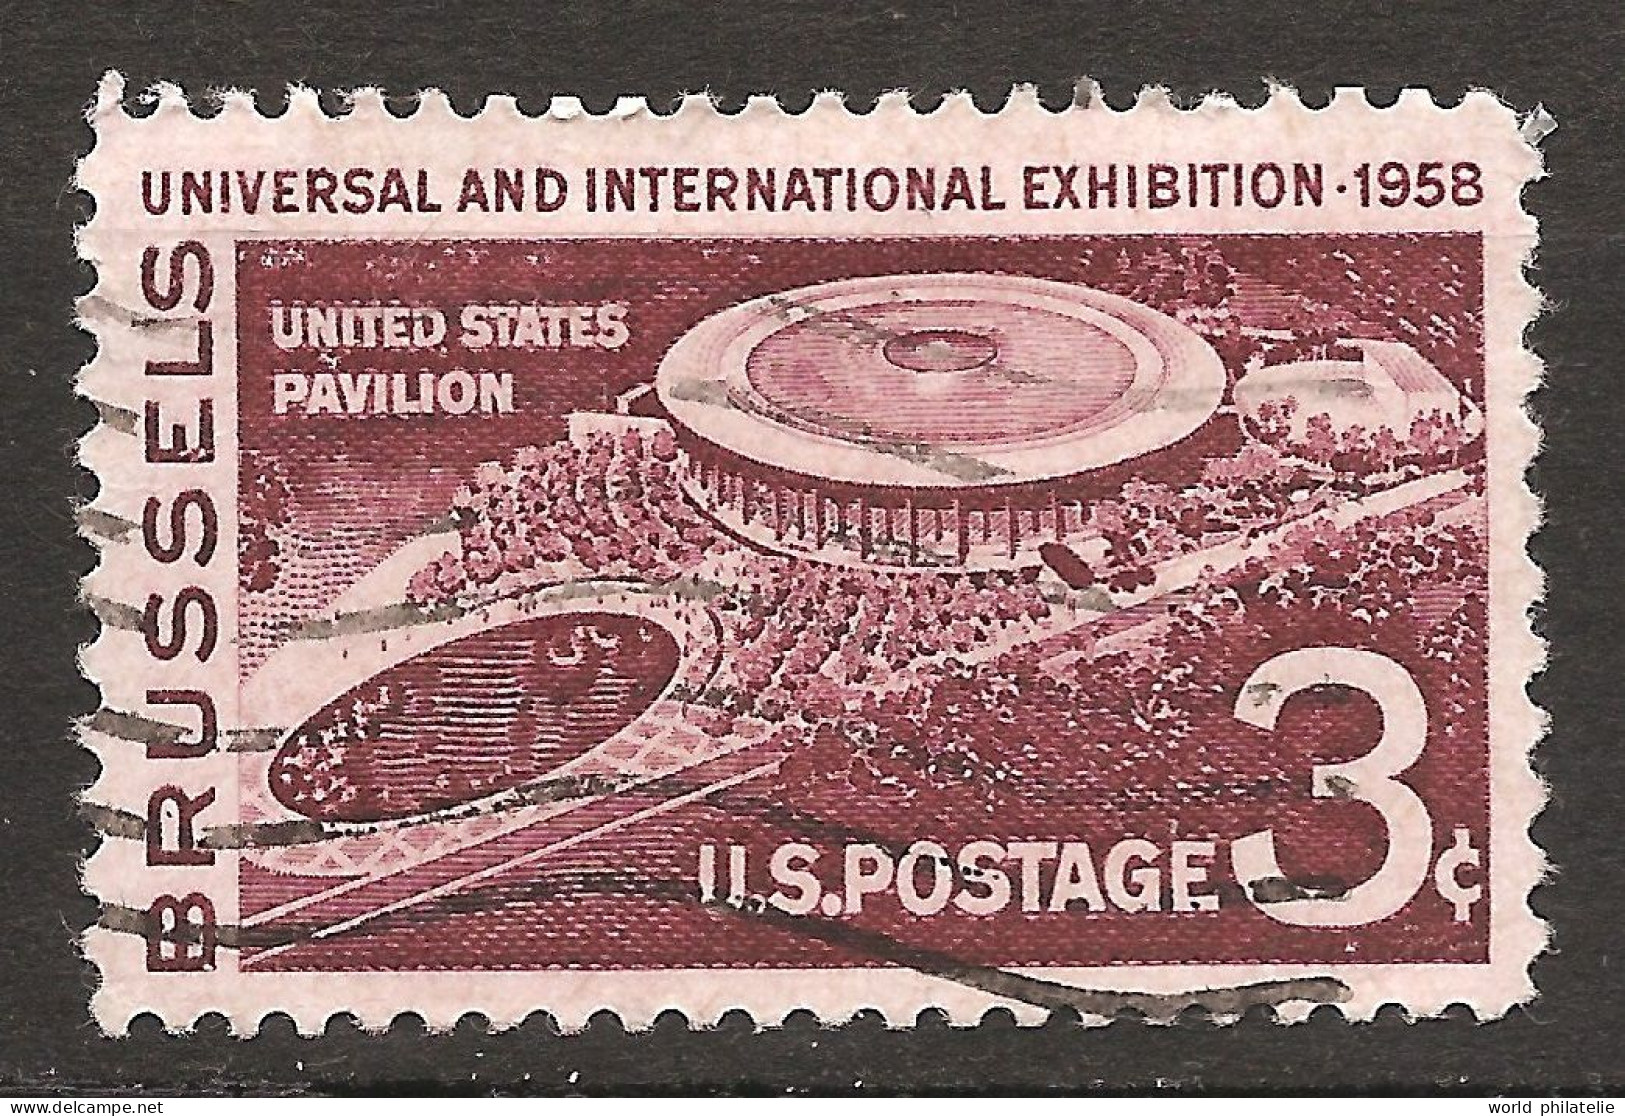 Etats-Unis D'Amérique USA 1958 N° 638 O Exposition Universelle, Bruxelles, Pavillon, Heysel, Orchestre, Disney, Cinéma - Used Stamps